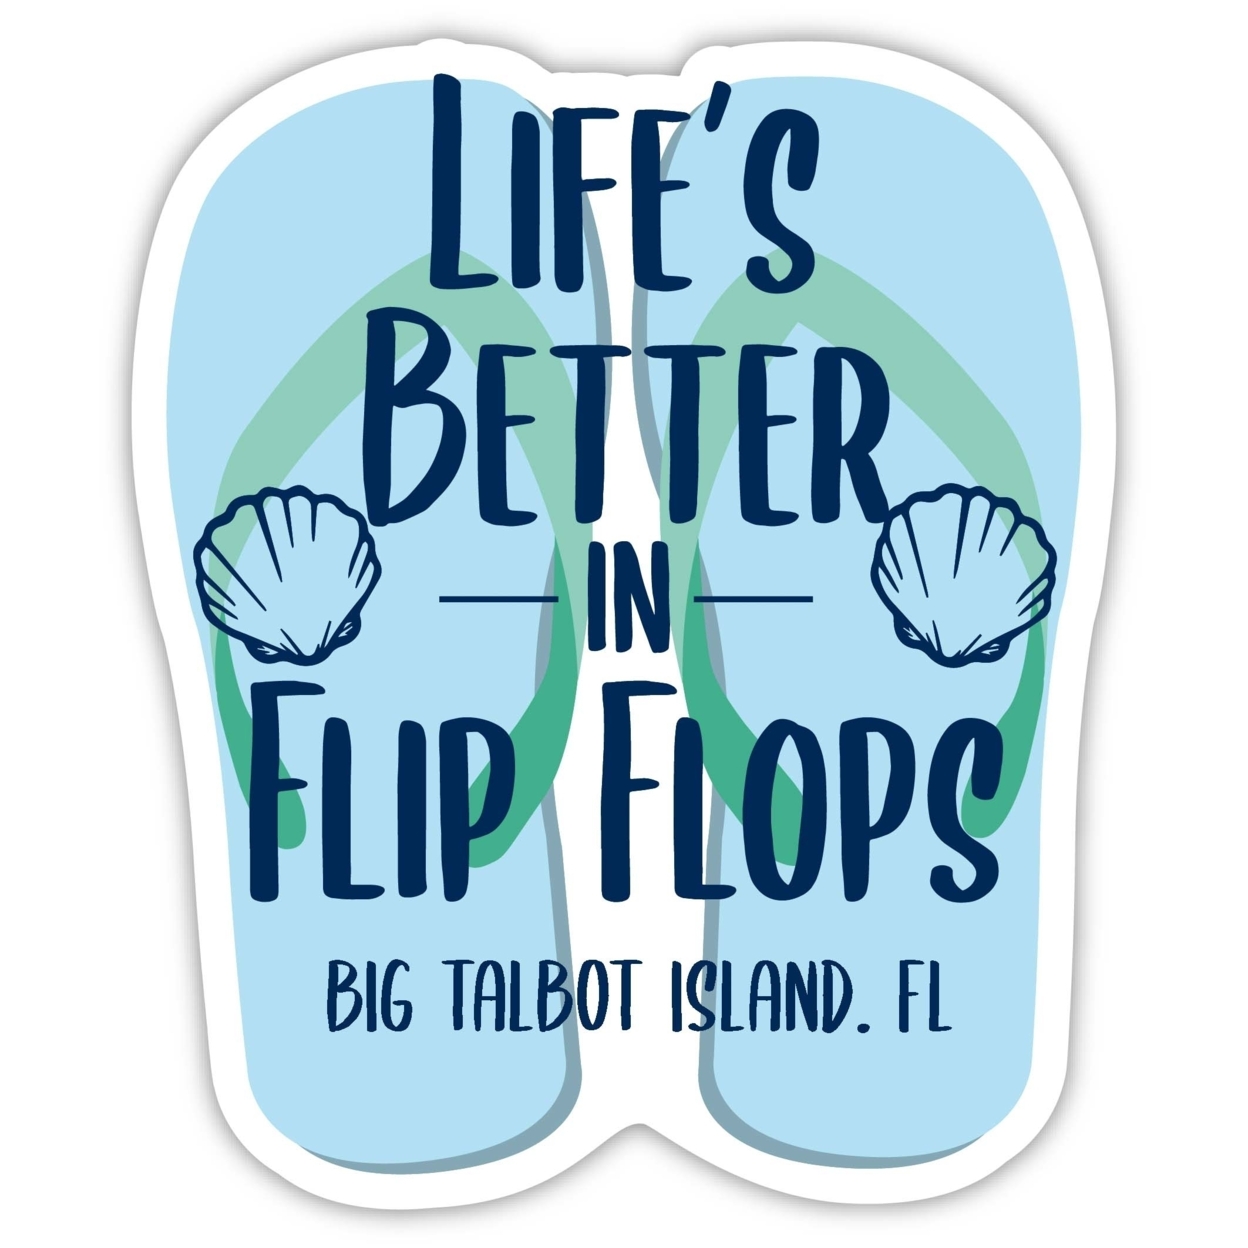 Big Talbot Island Florida Souvenir 4 Inch Vinyl Decal Sticker Flip Flop Design